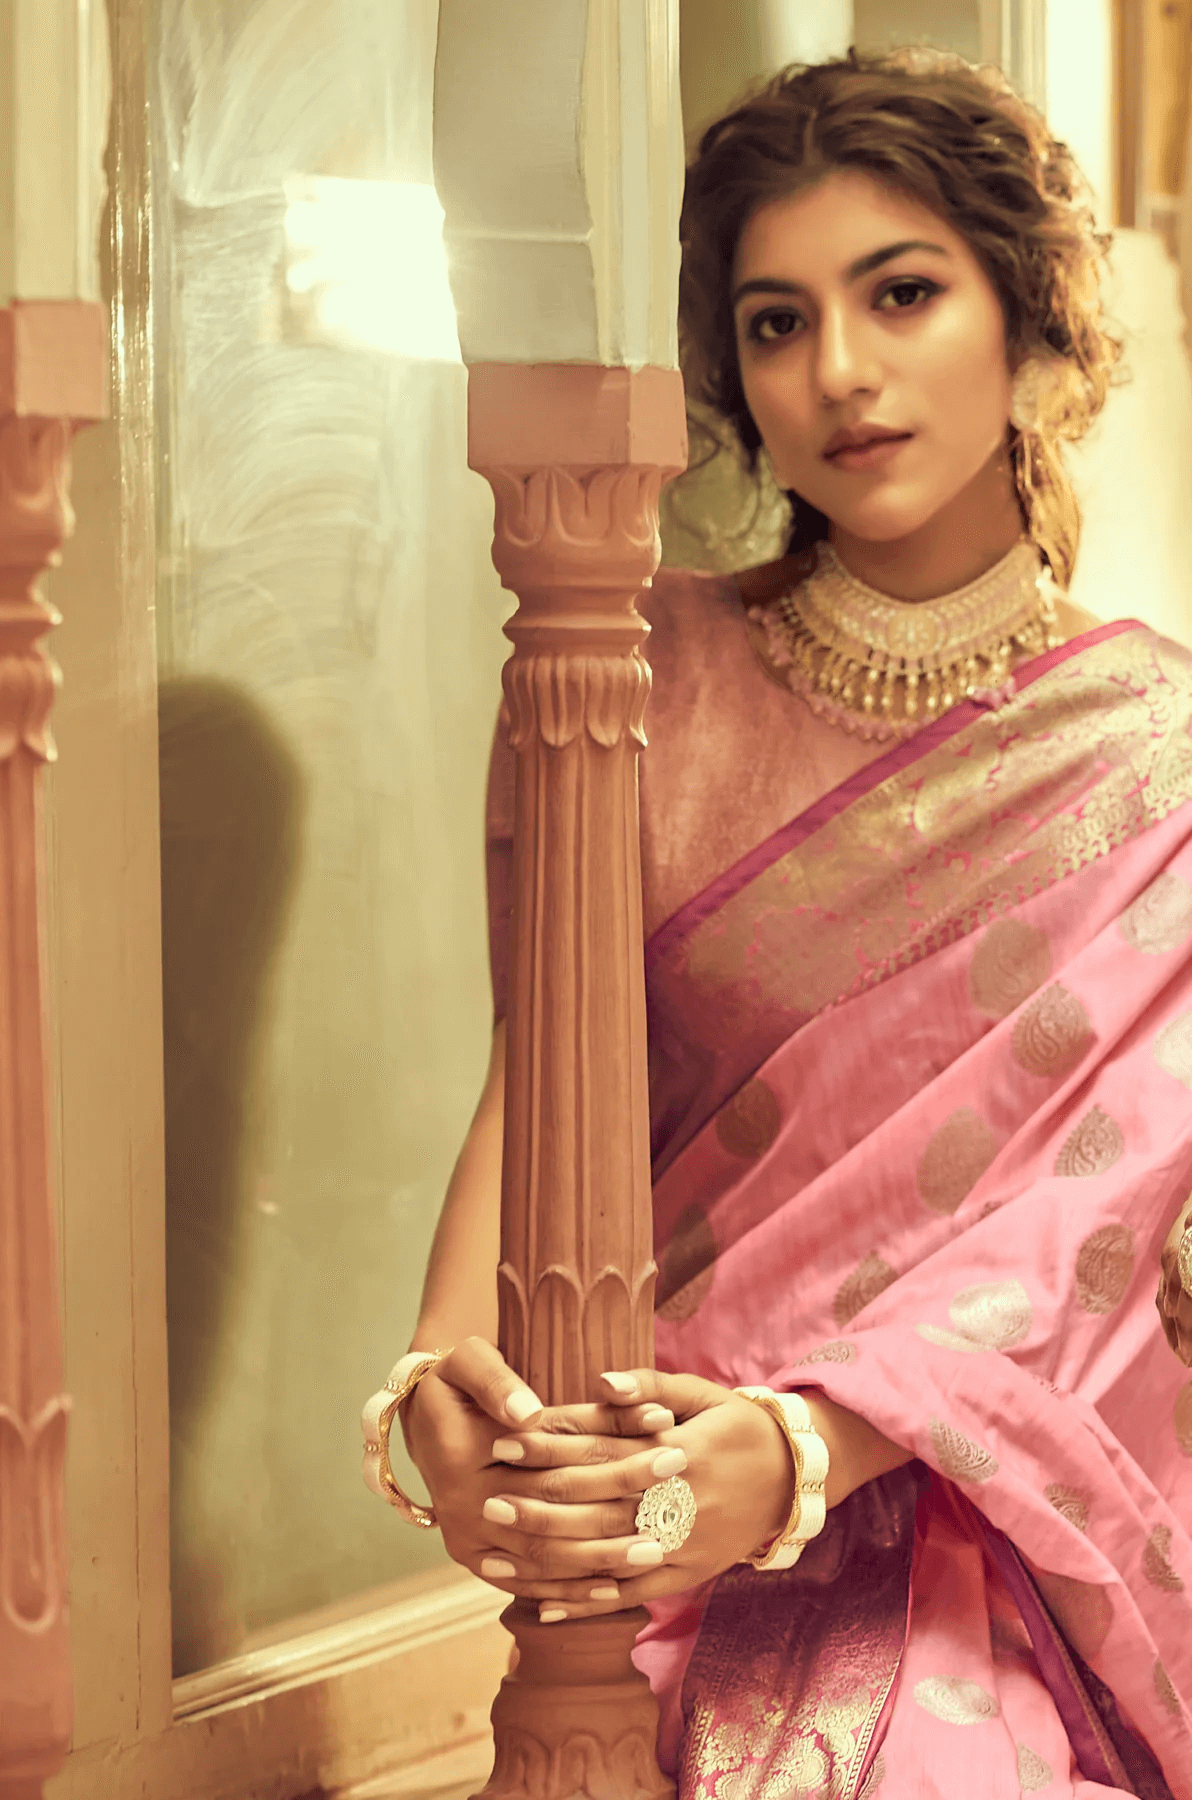 Incredible Pink Soft Banarasi Silk Saree With Hypnotic Blouse Piece - Colorful Saree